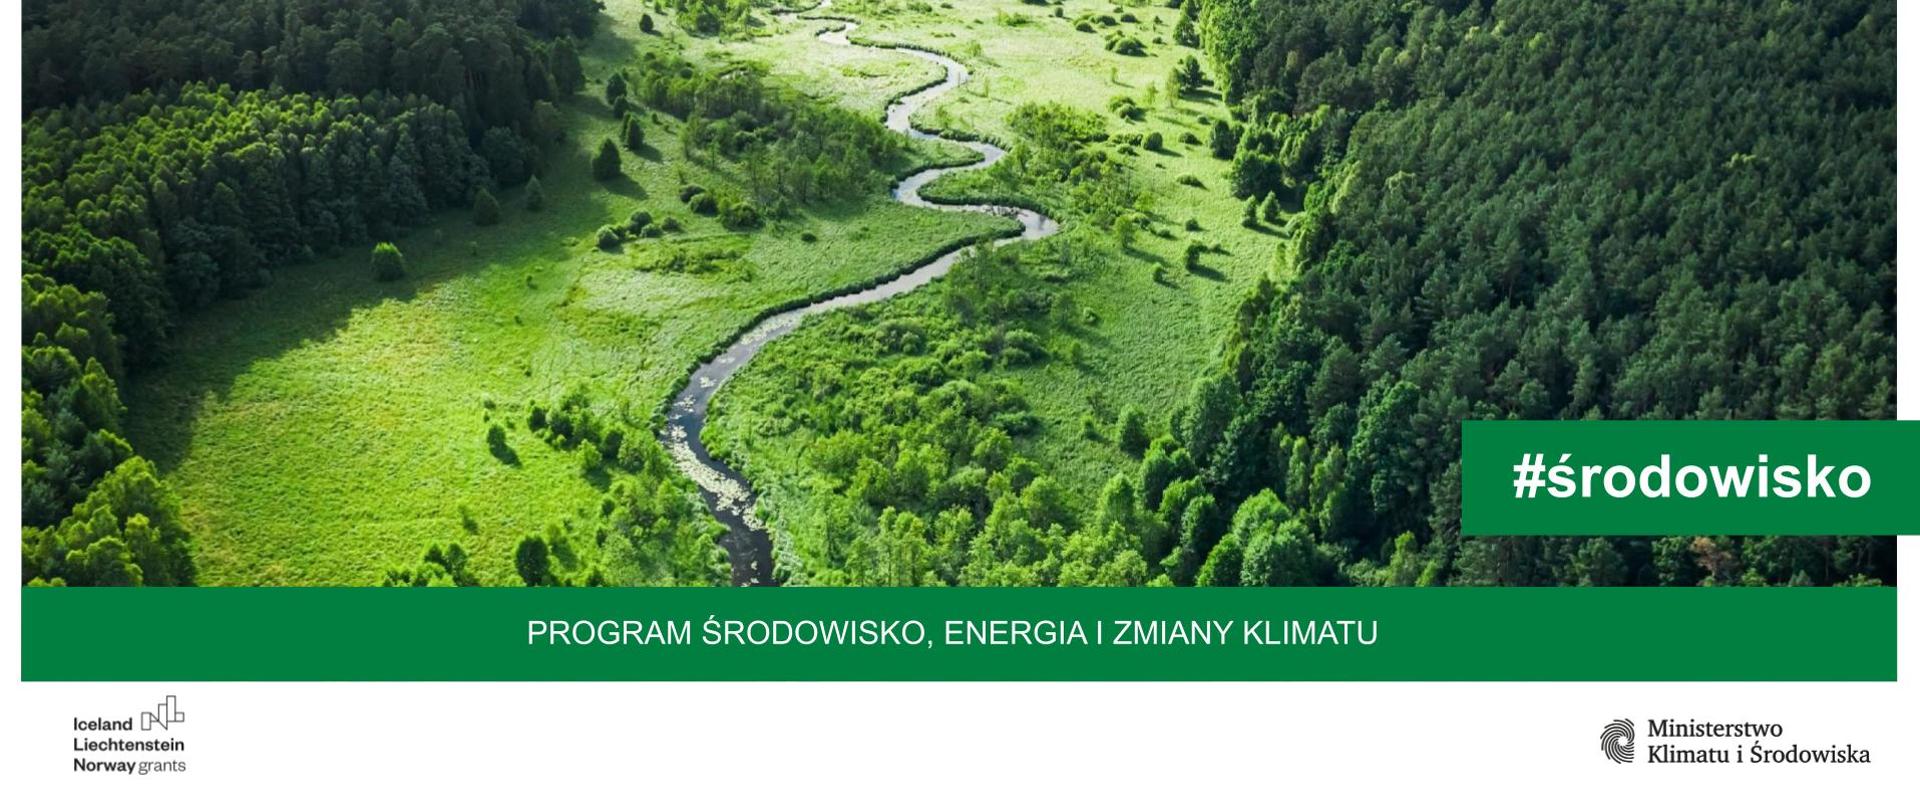 Środowisko_-_plany_zarządzania_ekosystemami_w_Programie_Środowisko_Energia_i_Zmiany_Klimatu_MF_EOG